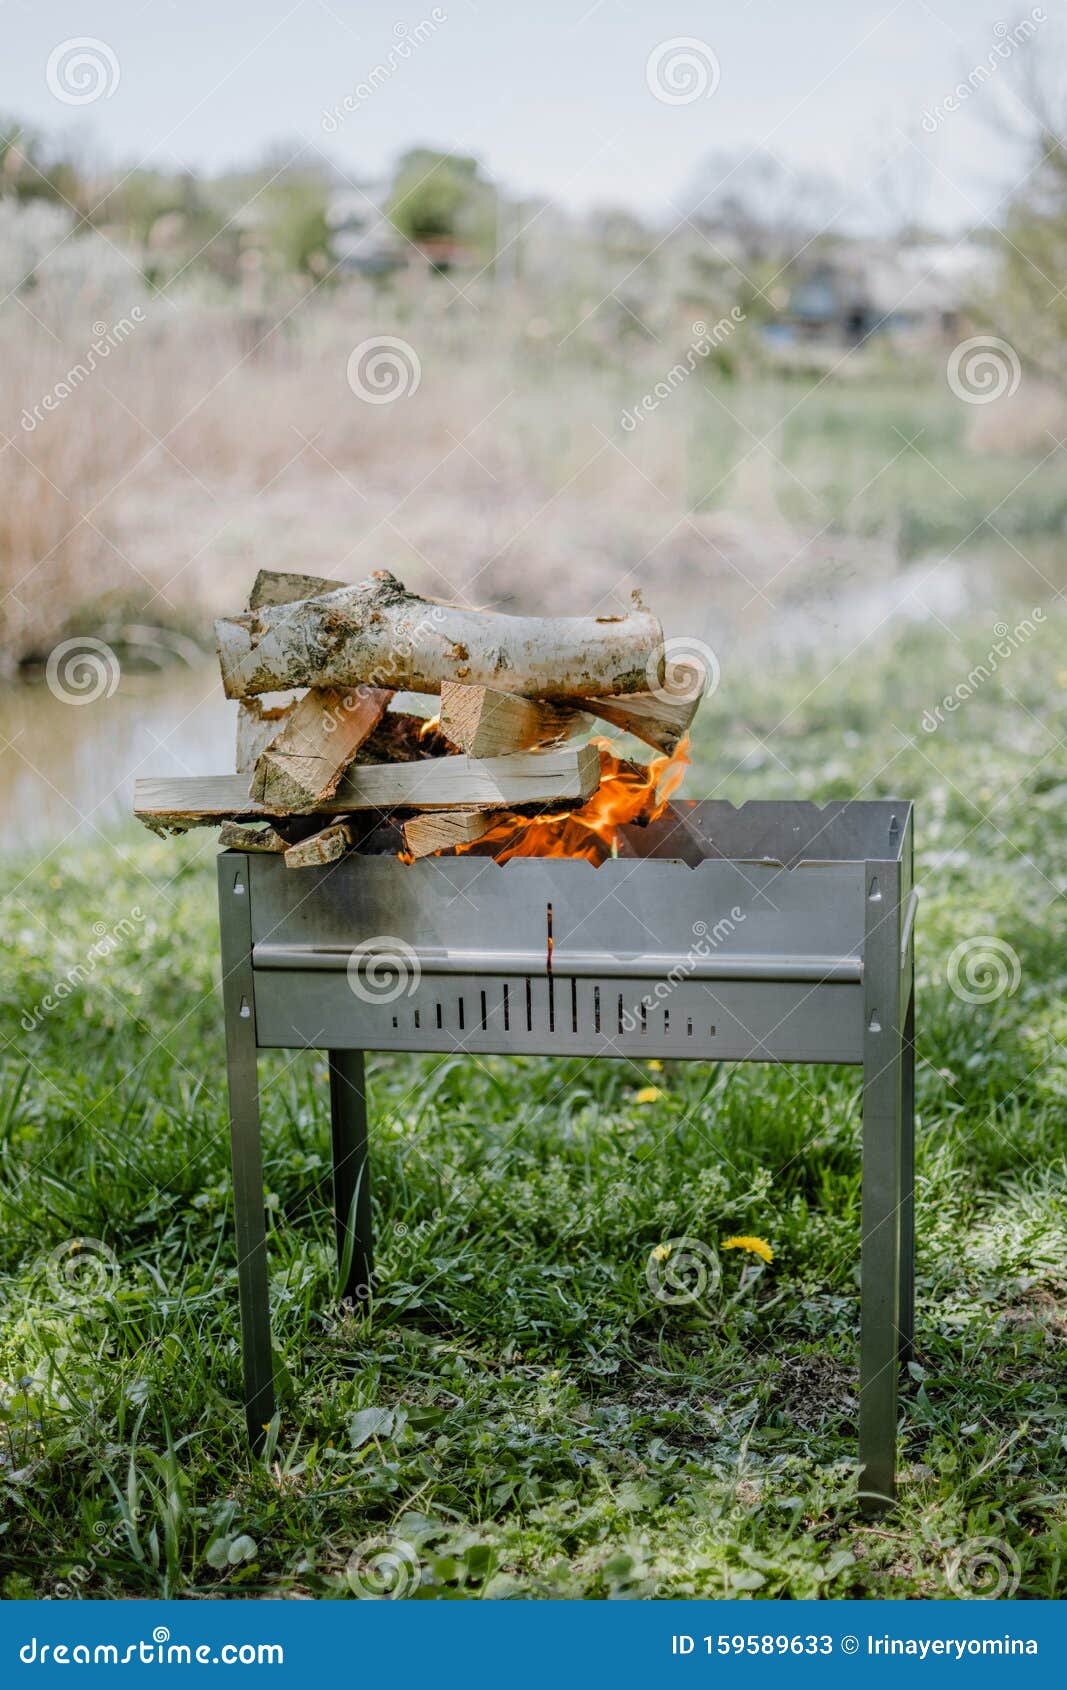 Barbecue Portable En Métal Avec Feu De Bois De Chauffage Et Flammes Rouges  Barbecue Barbecue Extérieur Pour Pique-niquer Feu De F Image stock - Image  du grillé, lueur: 159589633